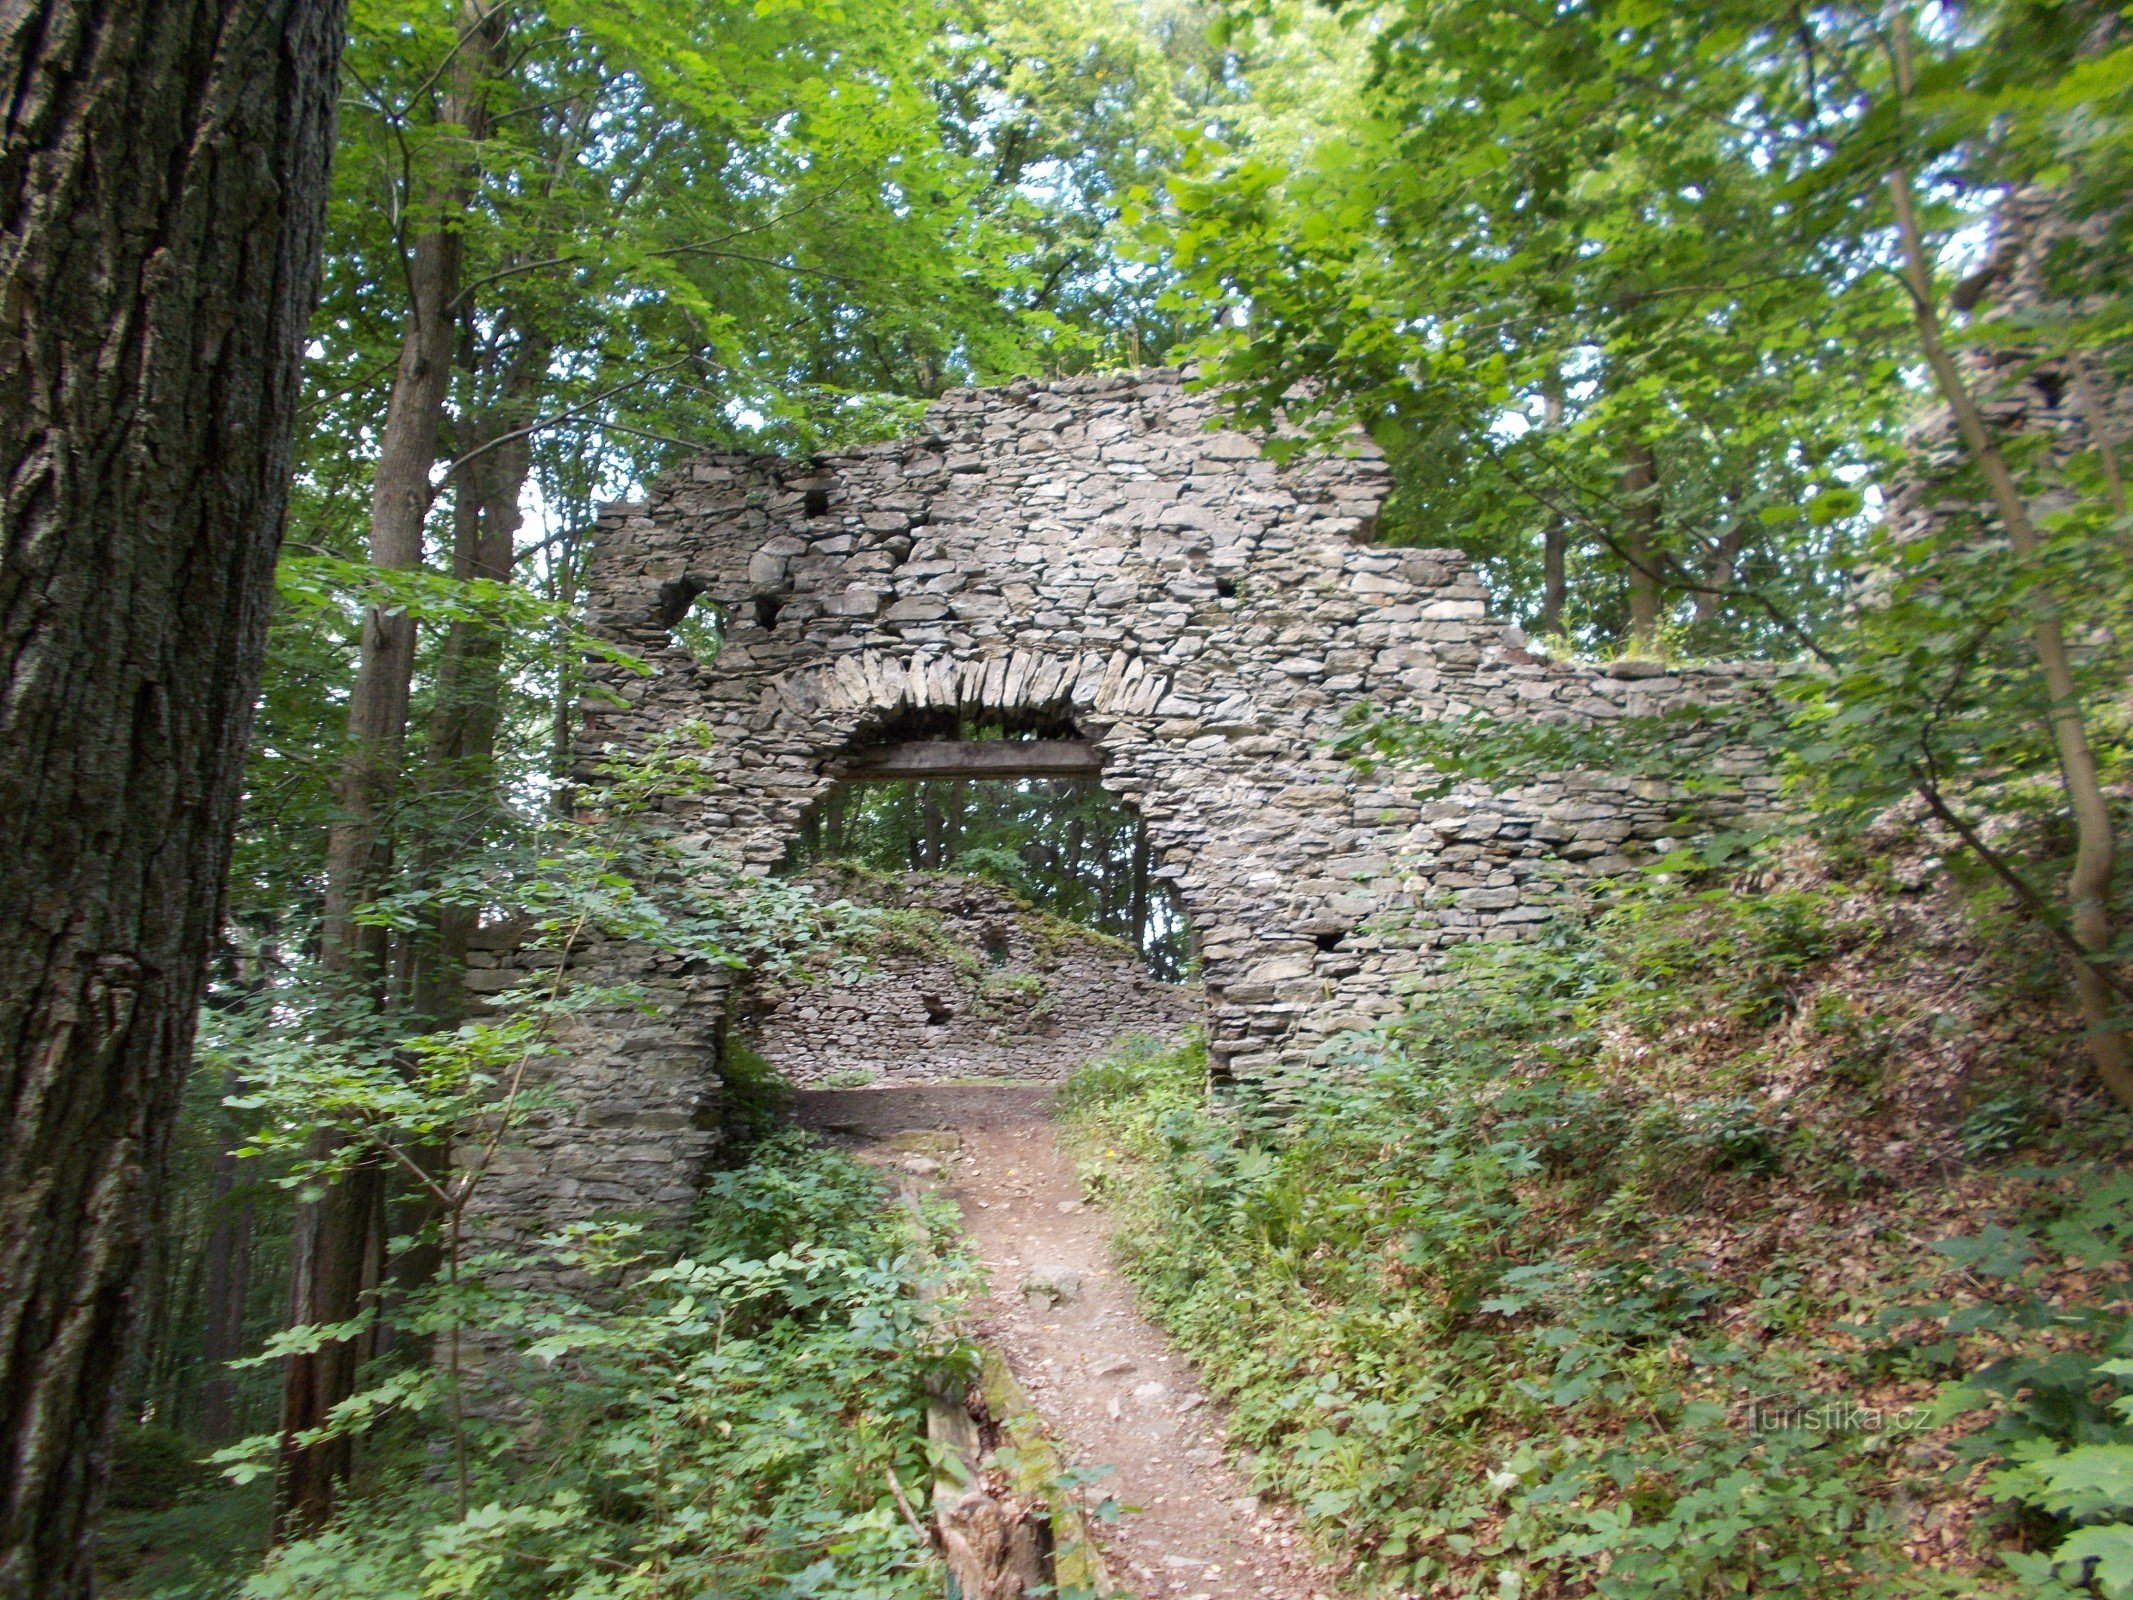 Furchtenberg, or New Castle near Kopřivná